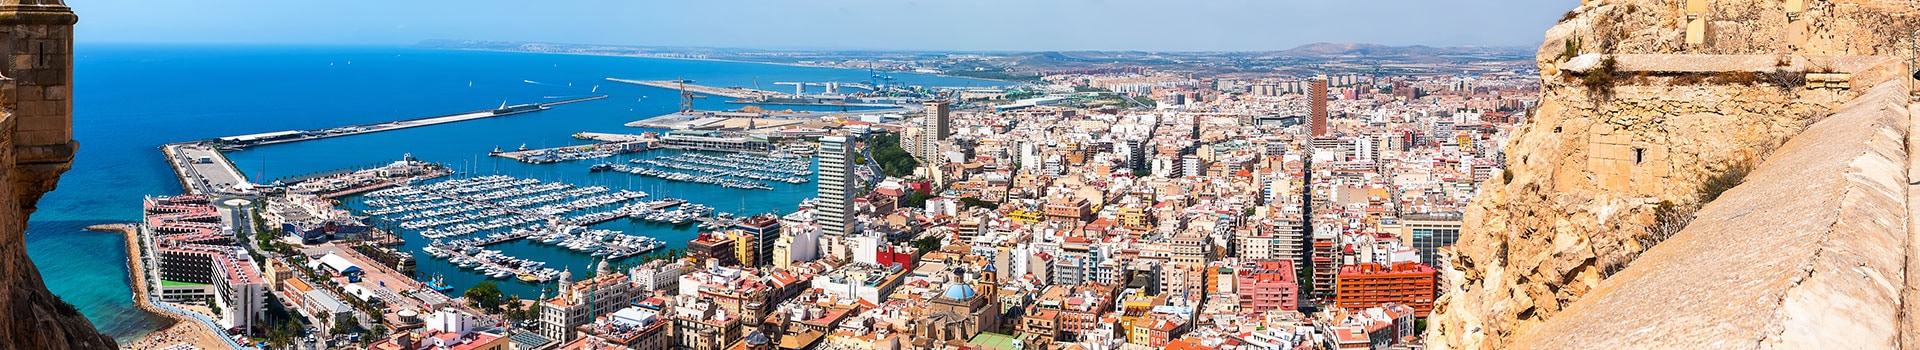 Lisboa - Alicante